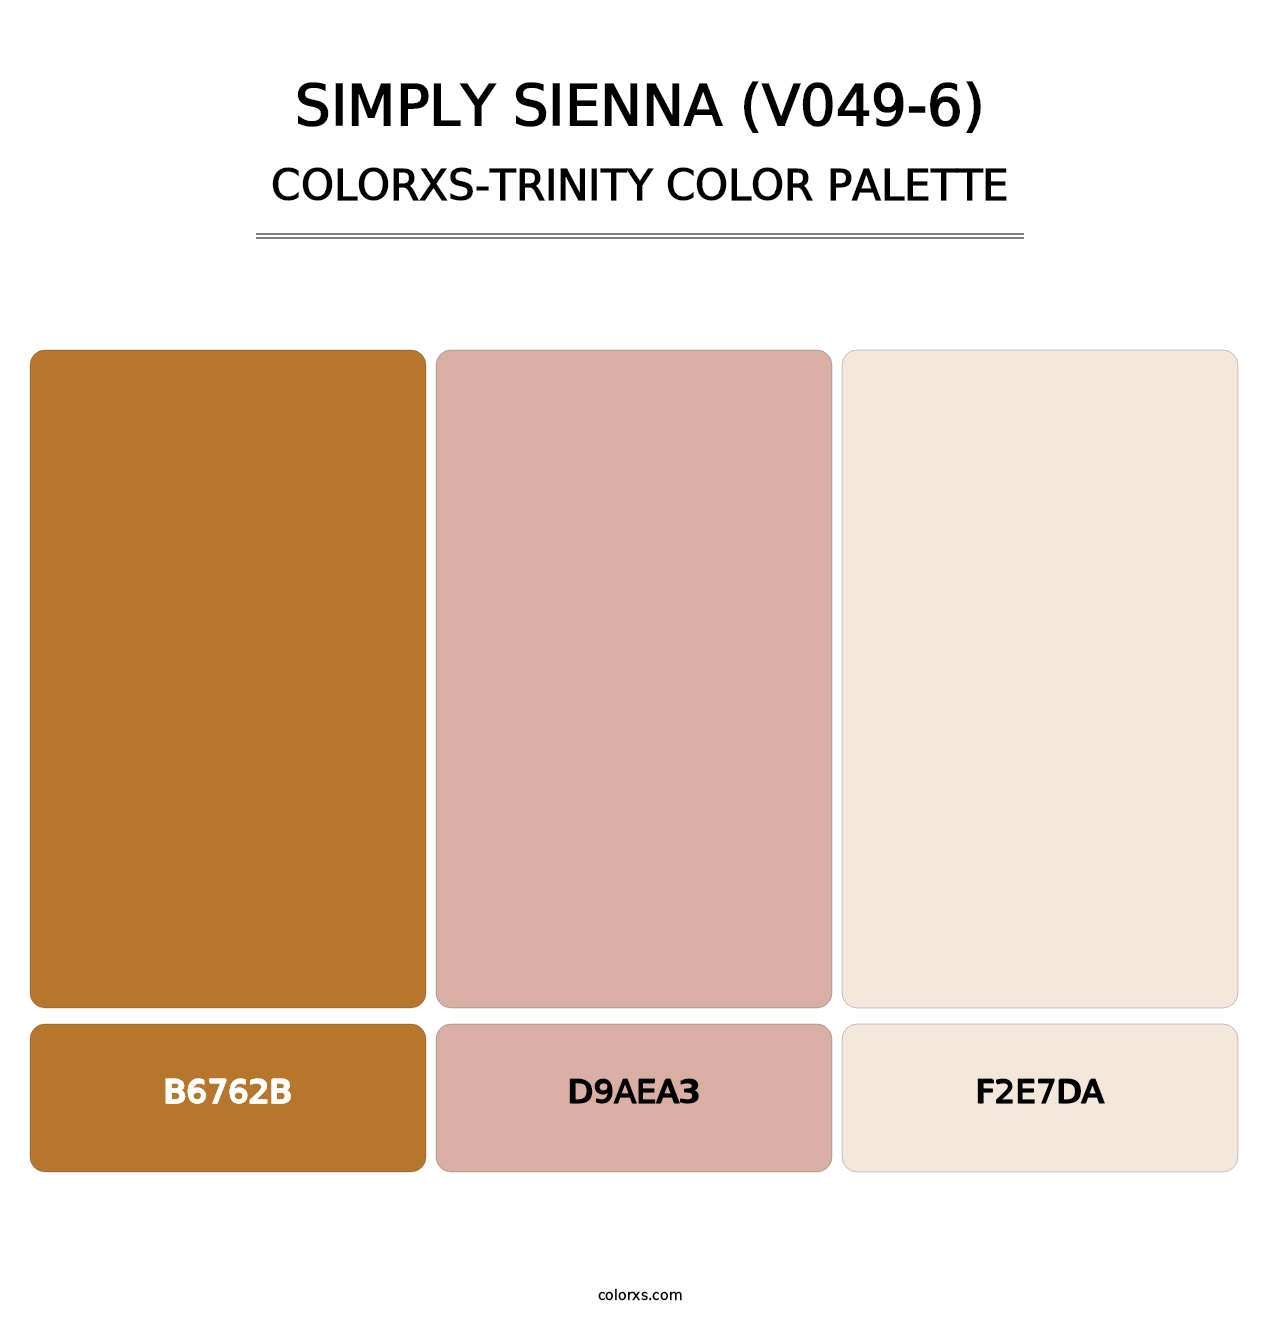 Simply Sienna (V049-6) - Colorxs Trinity Palette